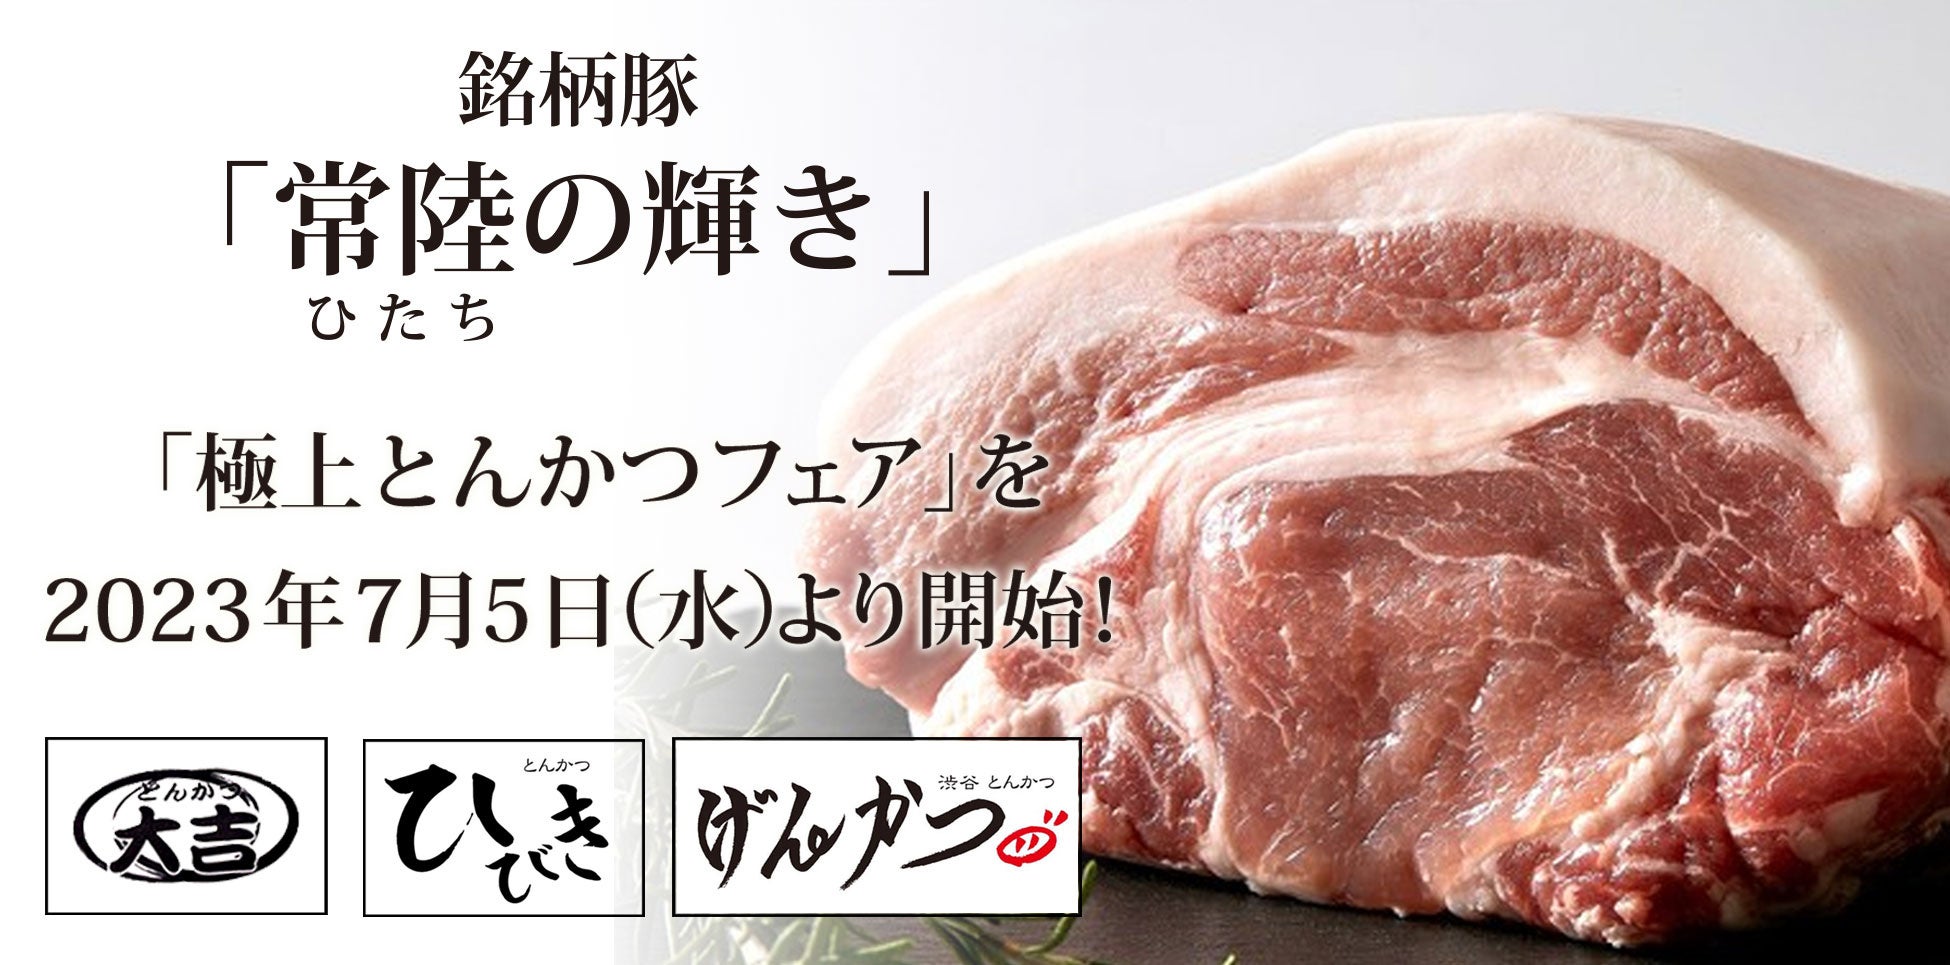 7月21日（金）、22日（土）の2日間、Soup Stock Tokyoから“スープ”がなくなります。カレーを楽しむ2日限りの夏のお祭り「Curry Stock Tokyo」開催。